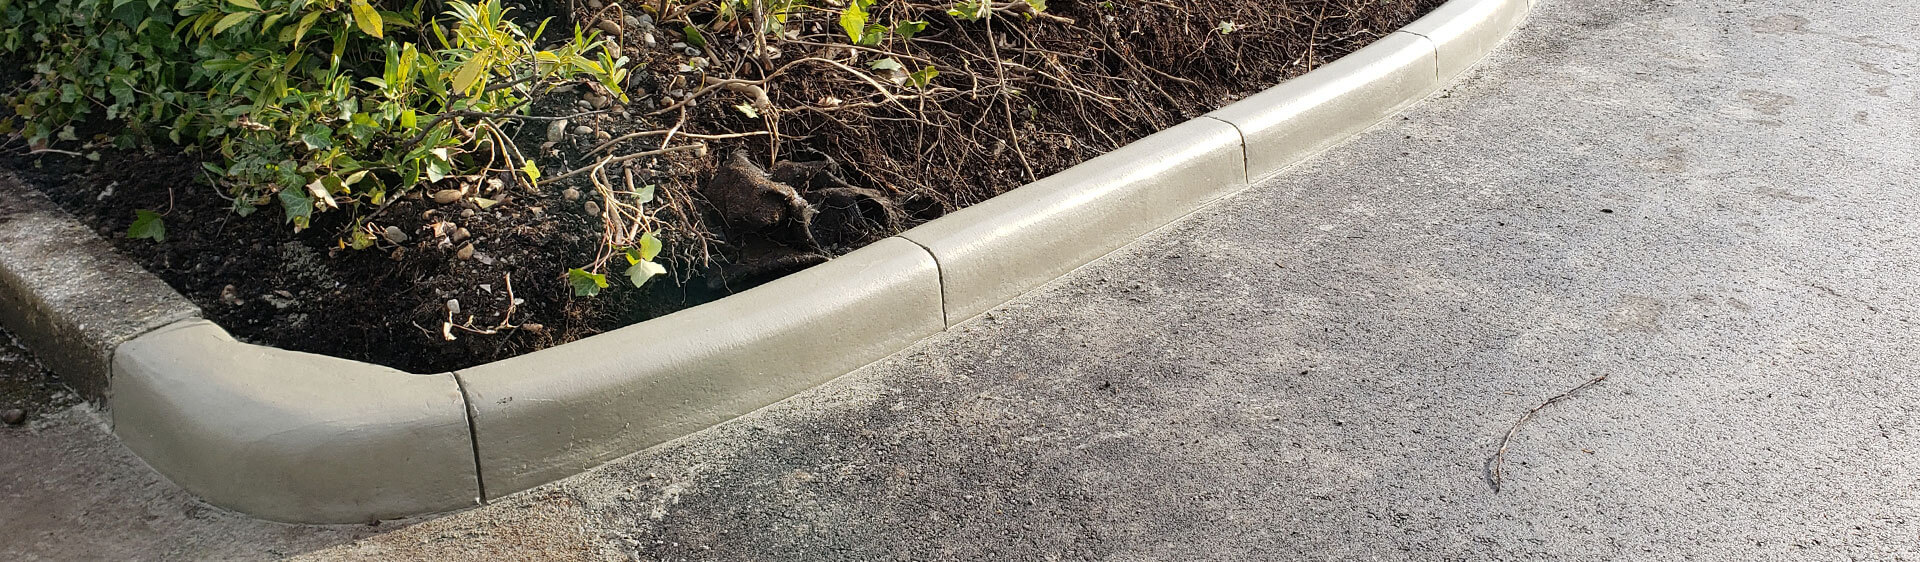 Maple Ridge Concrete Curbing, Garden Edging and Curb Repairs